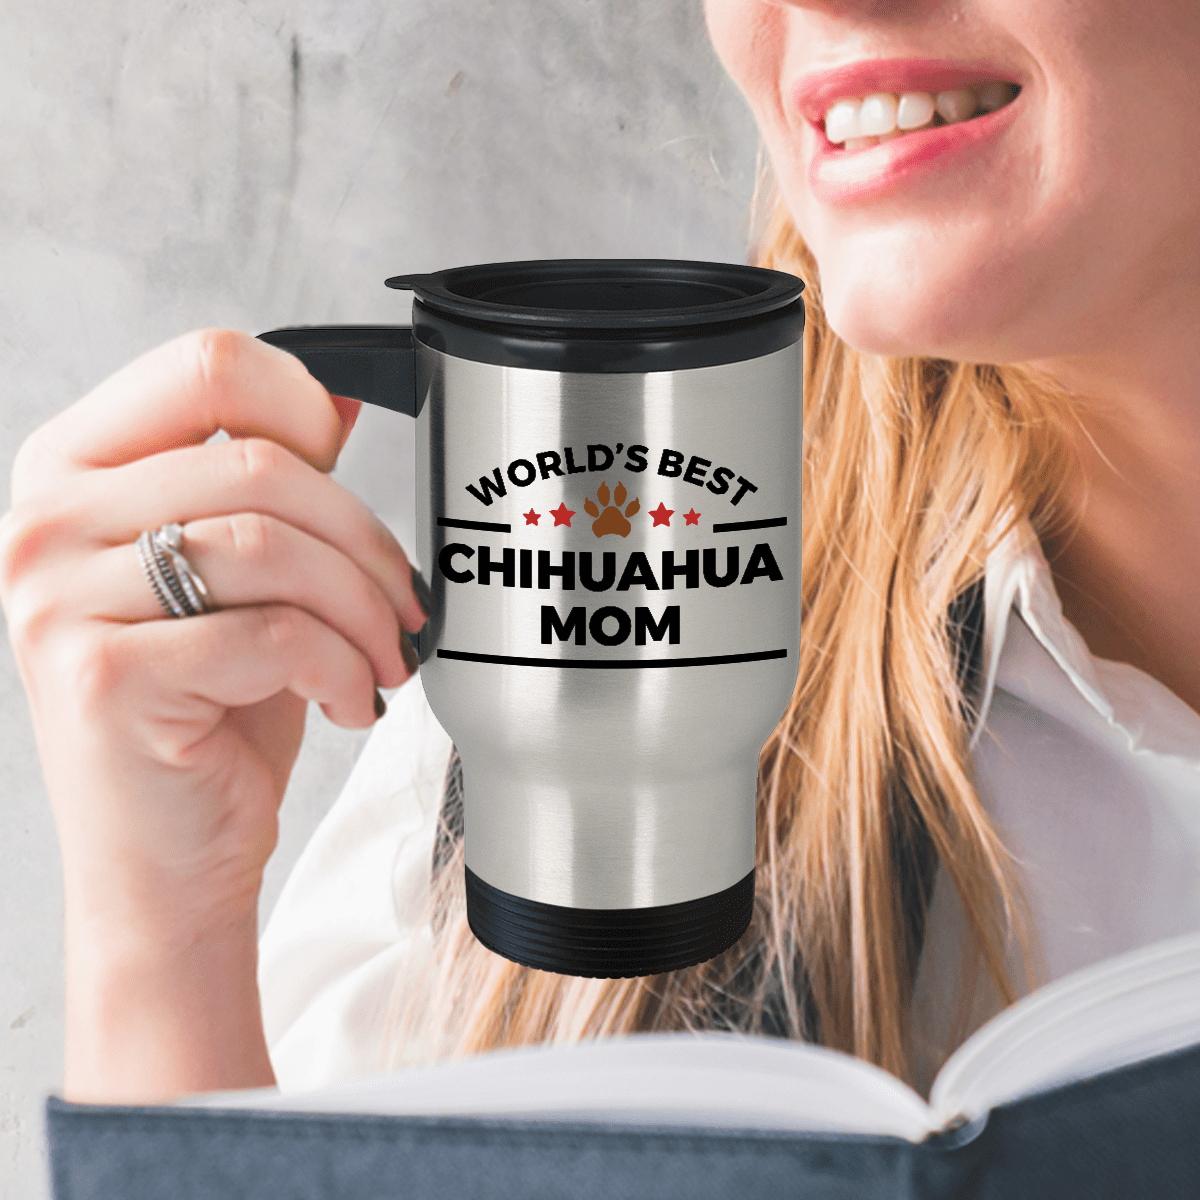 Chihuahua Dog Mom Travel Coffee Mug